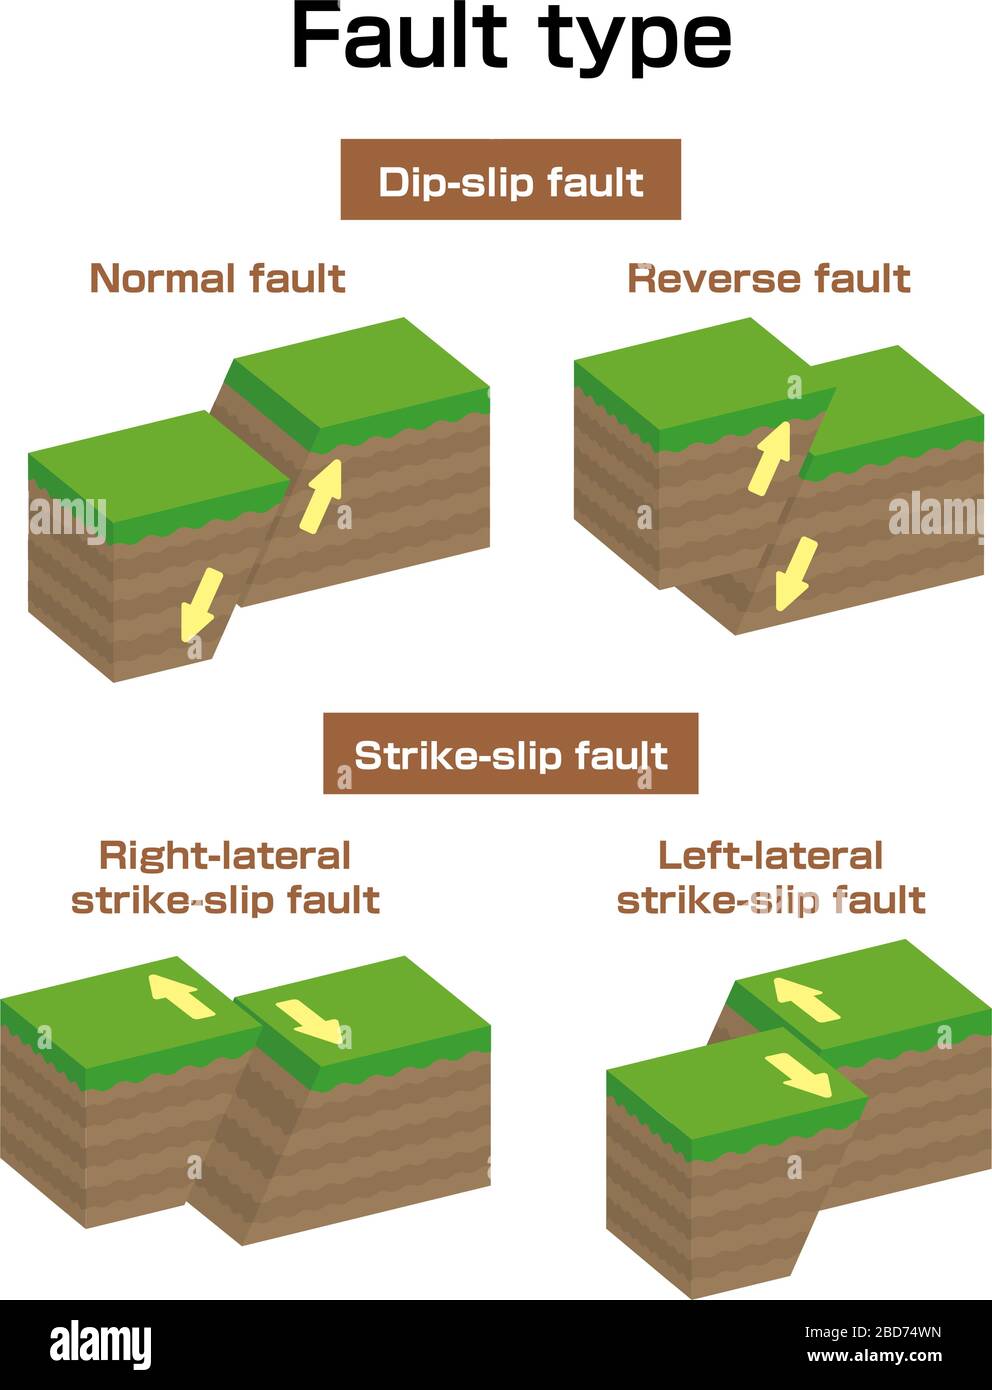 left lateral strike slip fault